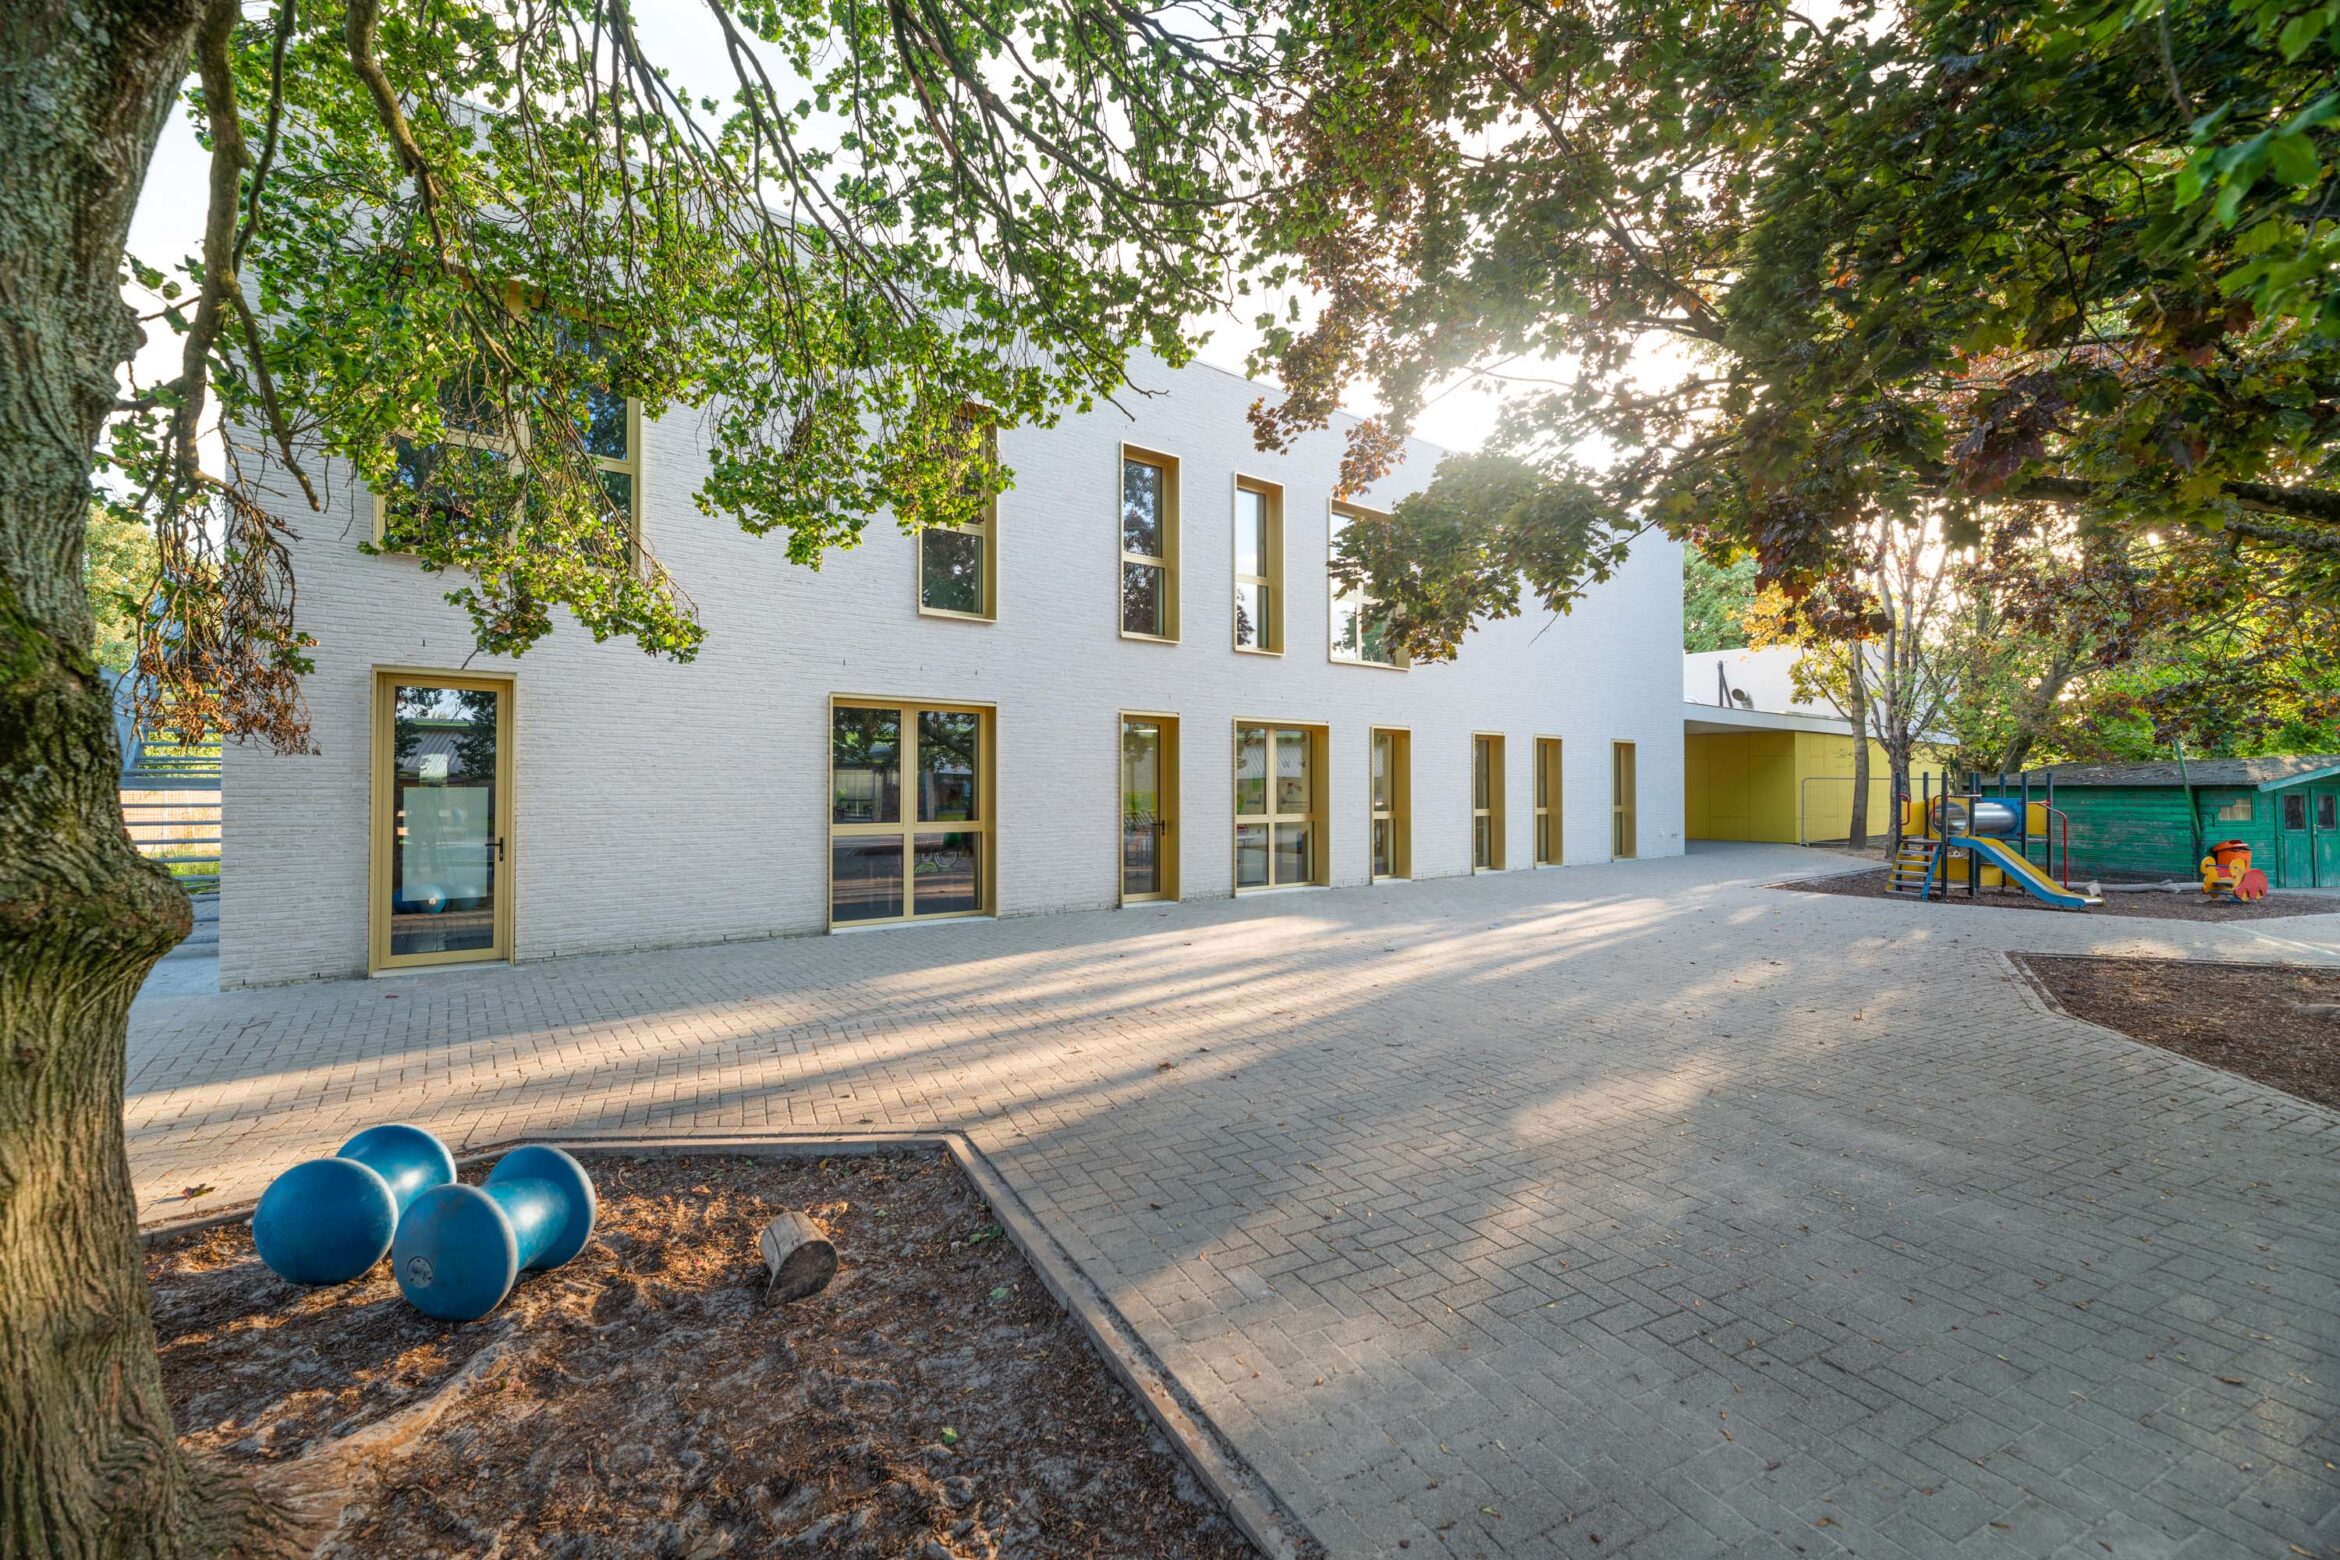 School De Vlindertuin in Mechelen als onderwerp van stabiliteitsstudie door ingenieursbureau Lisst